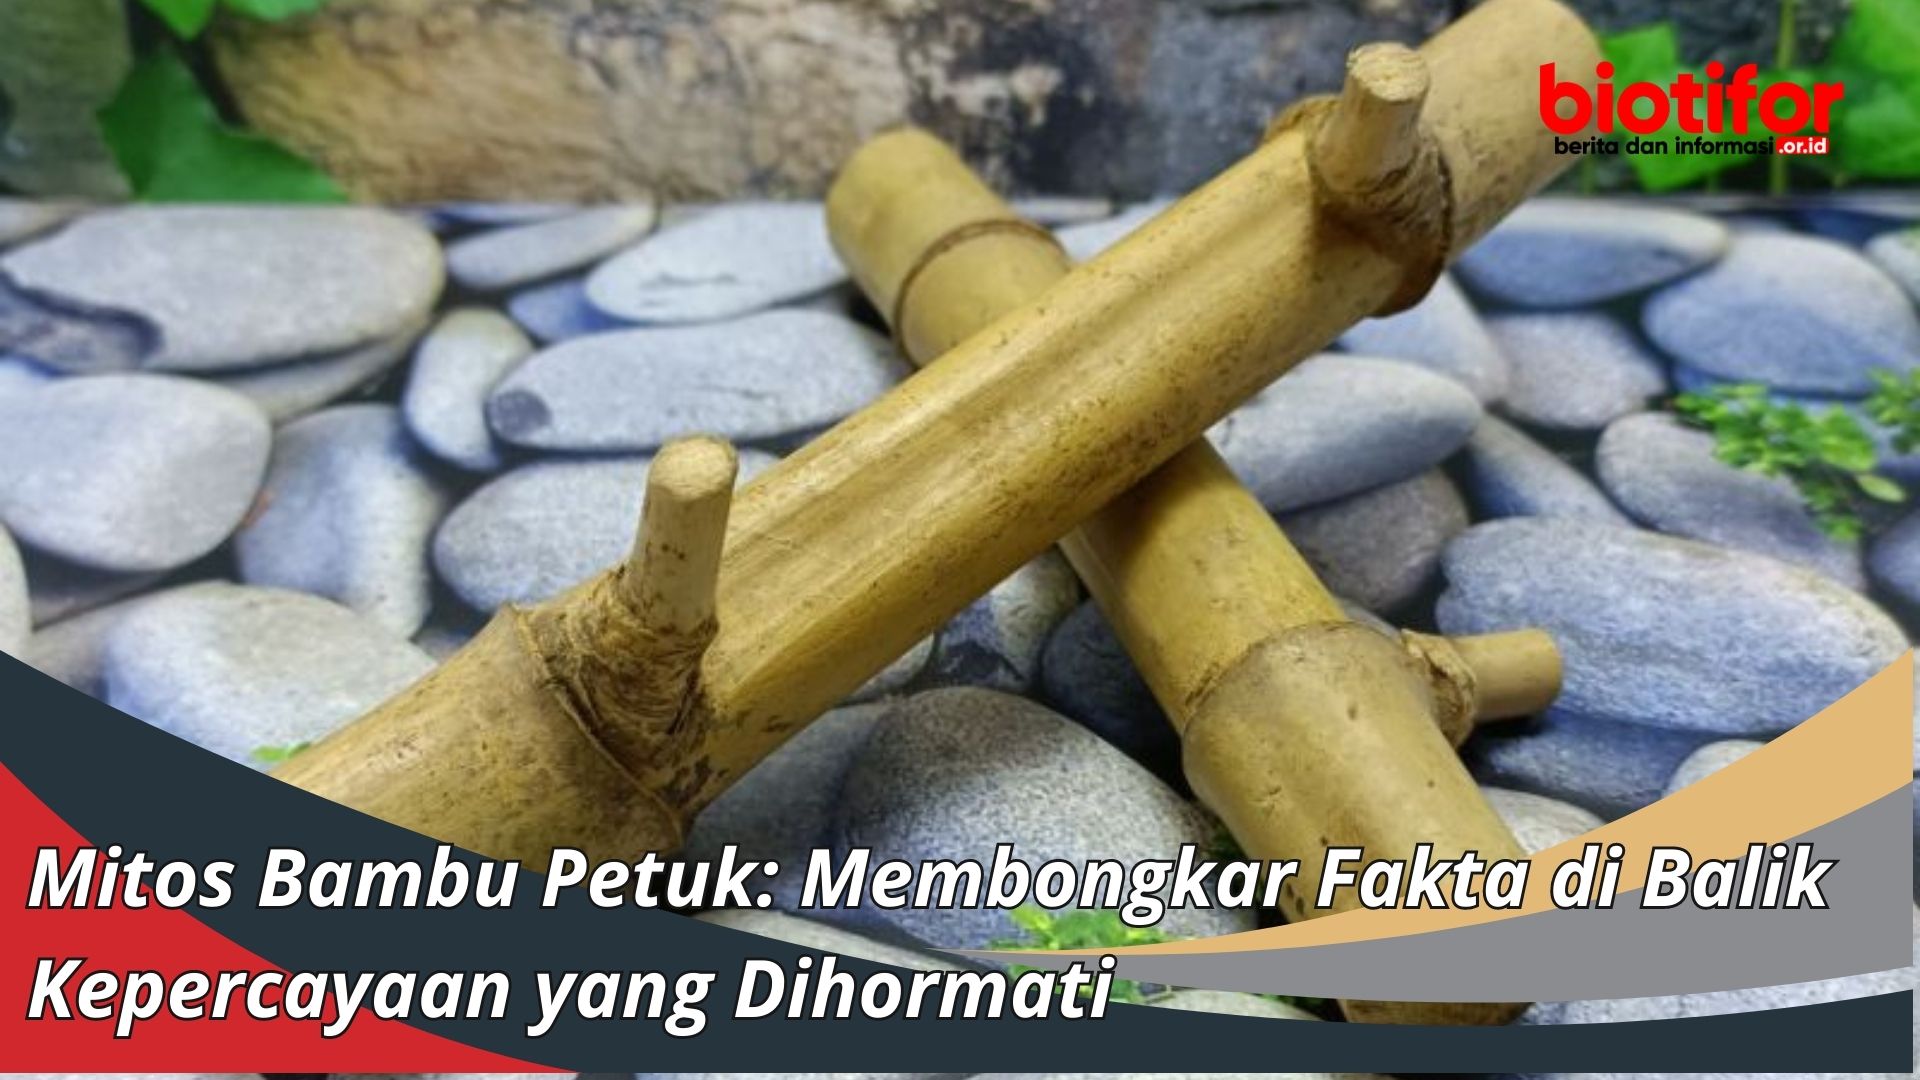 Mitos Bambu Petuk: Membongkar Fakta di Balik Kepercayaan yang Dihormati